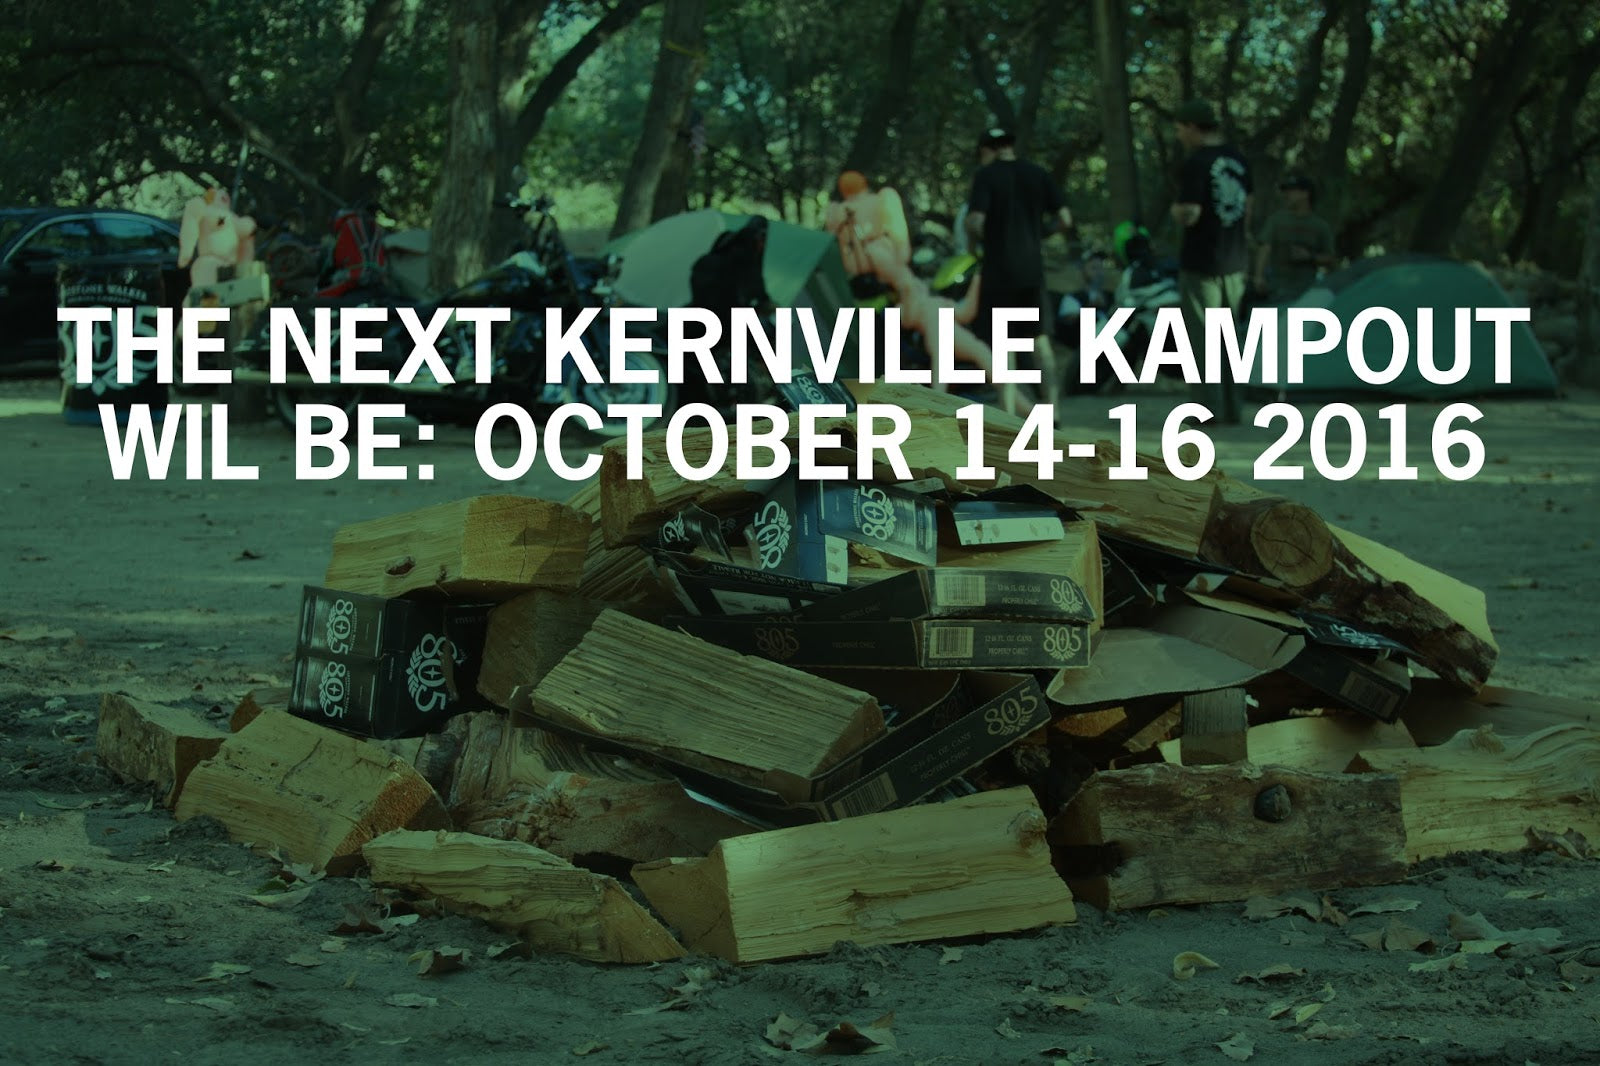 KERNVILLE KAMPOUT 2015 WRAP-UP & DATES FOR 2016